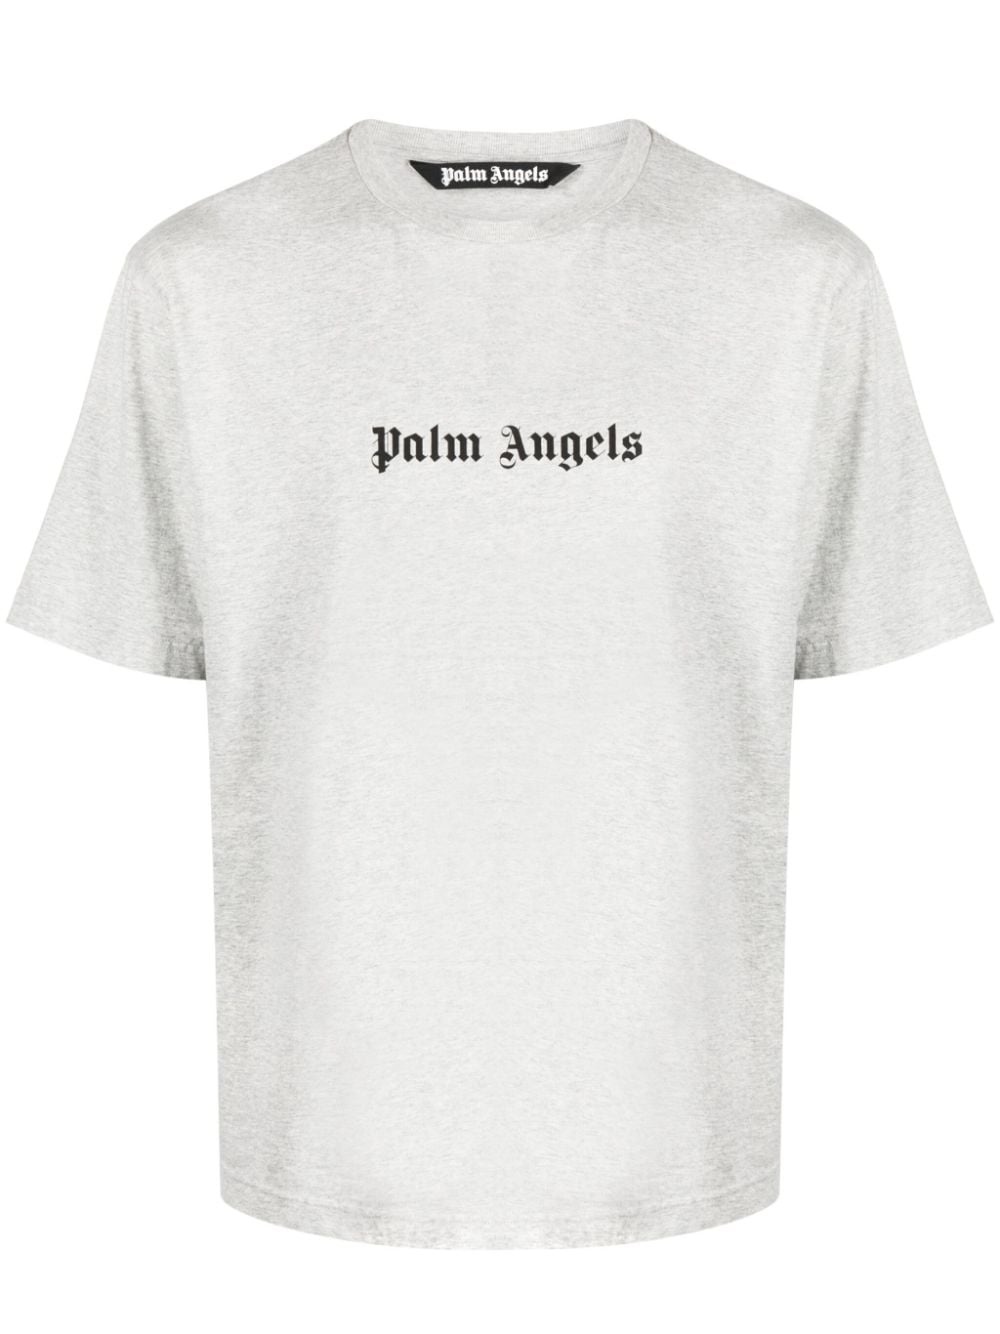 Palm Angels White Cotton T-Shirt White